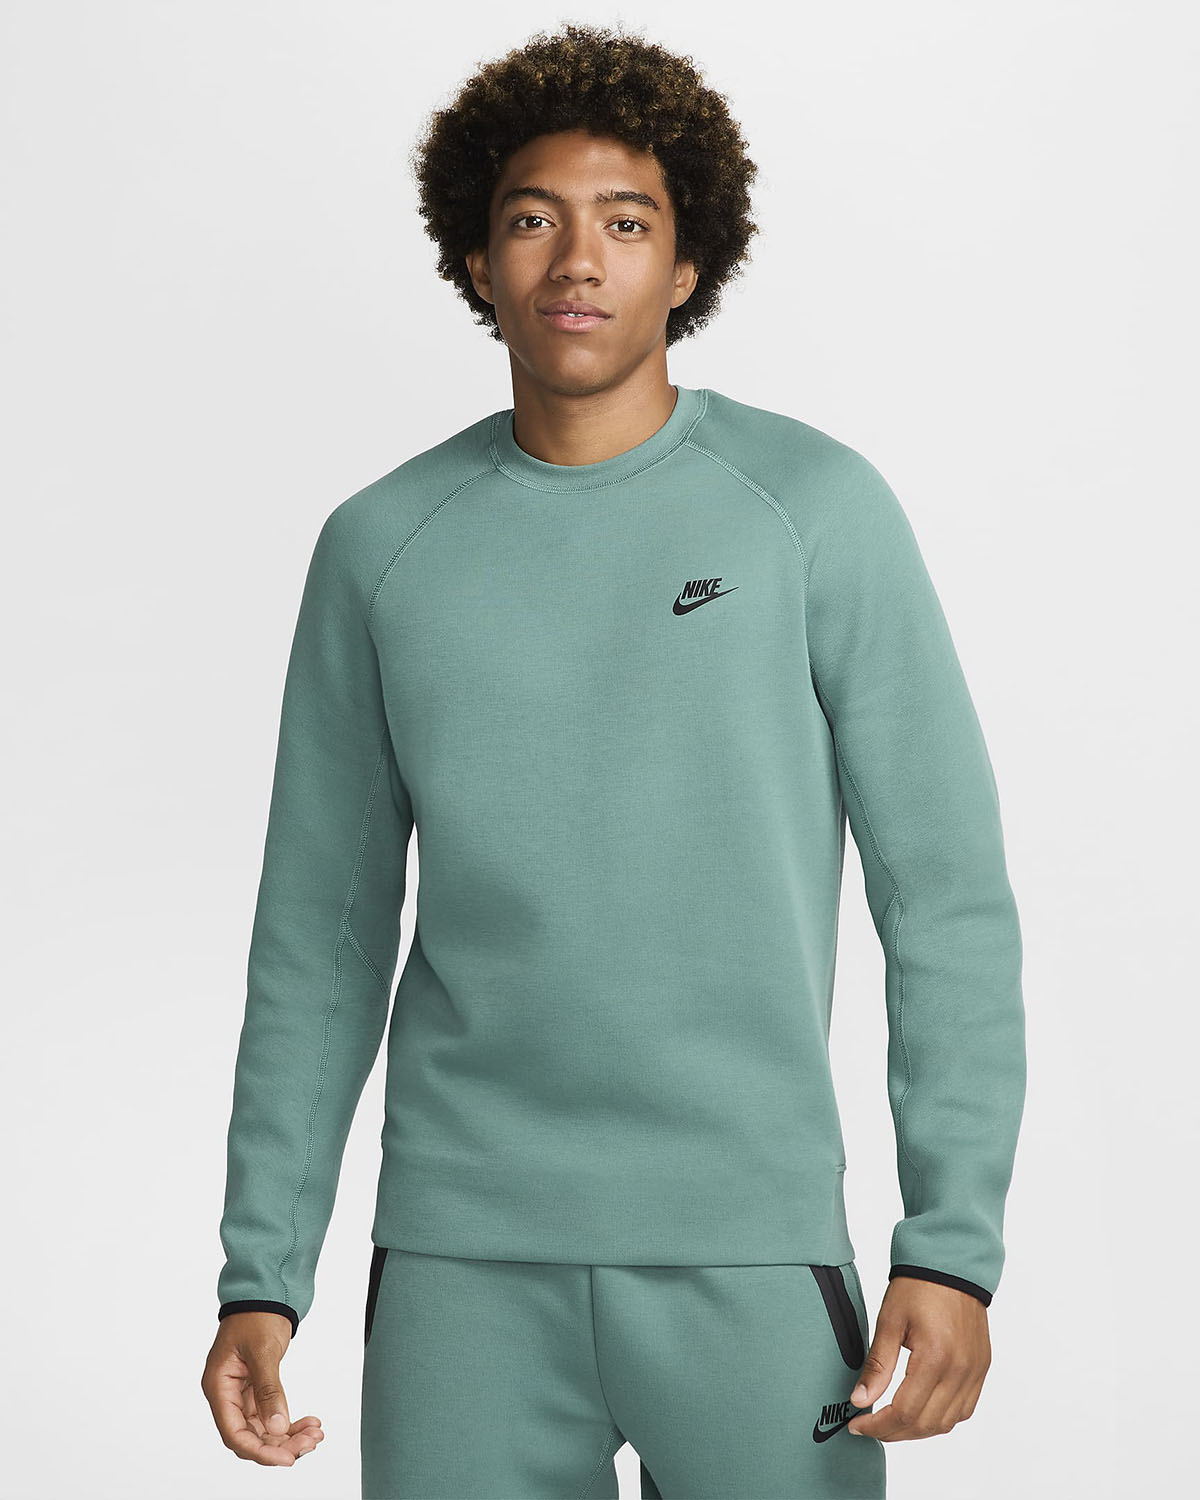 Nike Tech Fleece Crew Sweatshirt Bicoastal